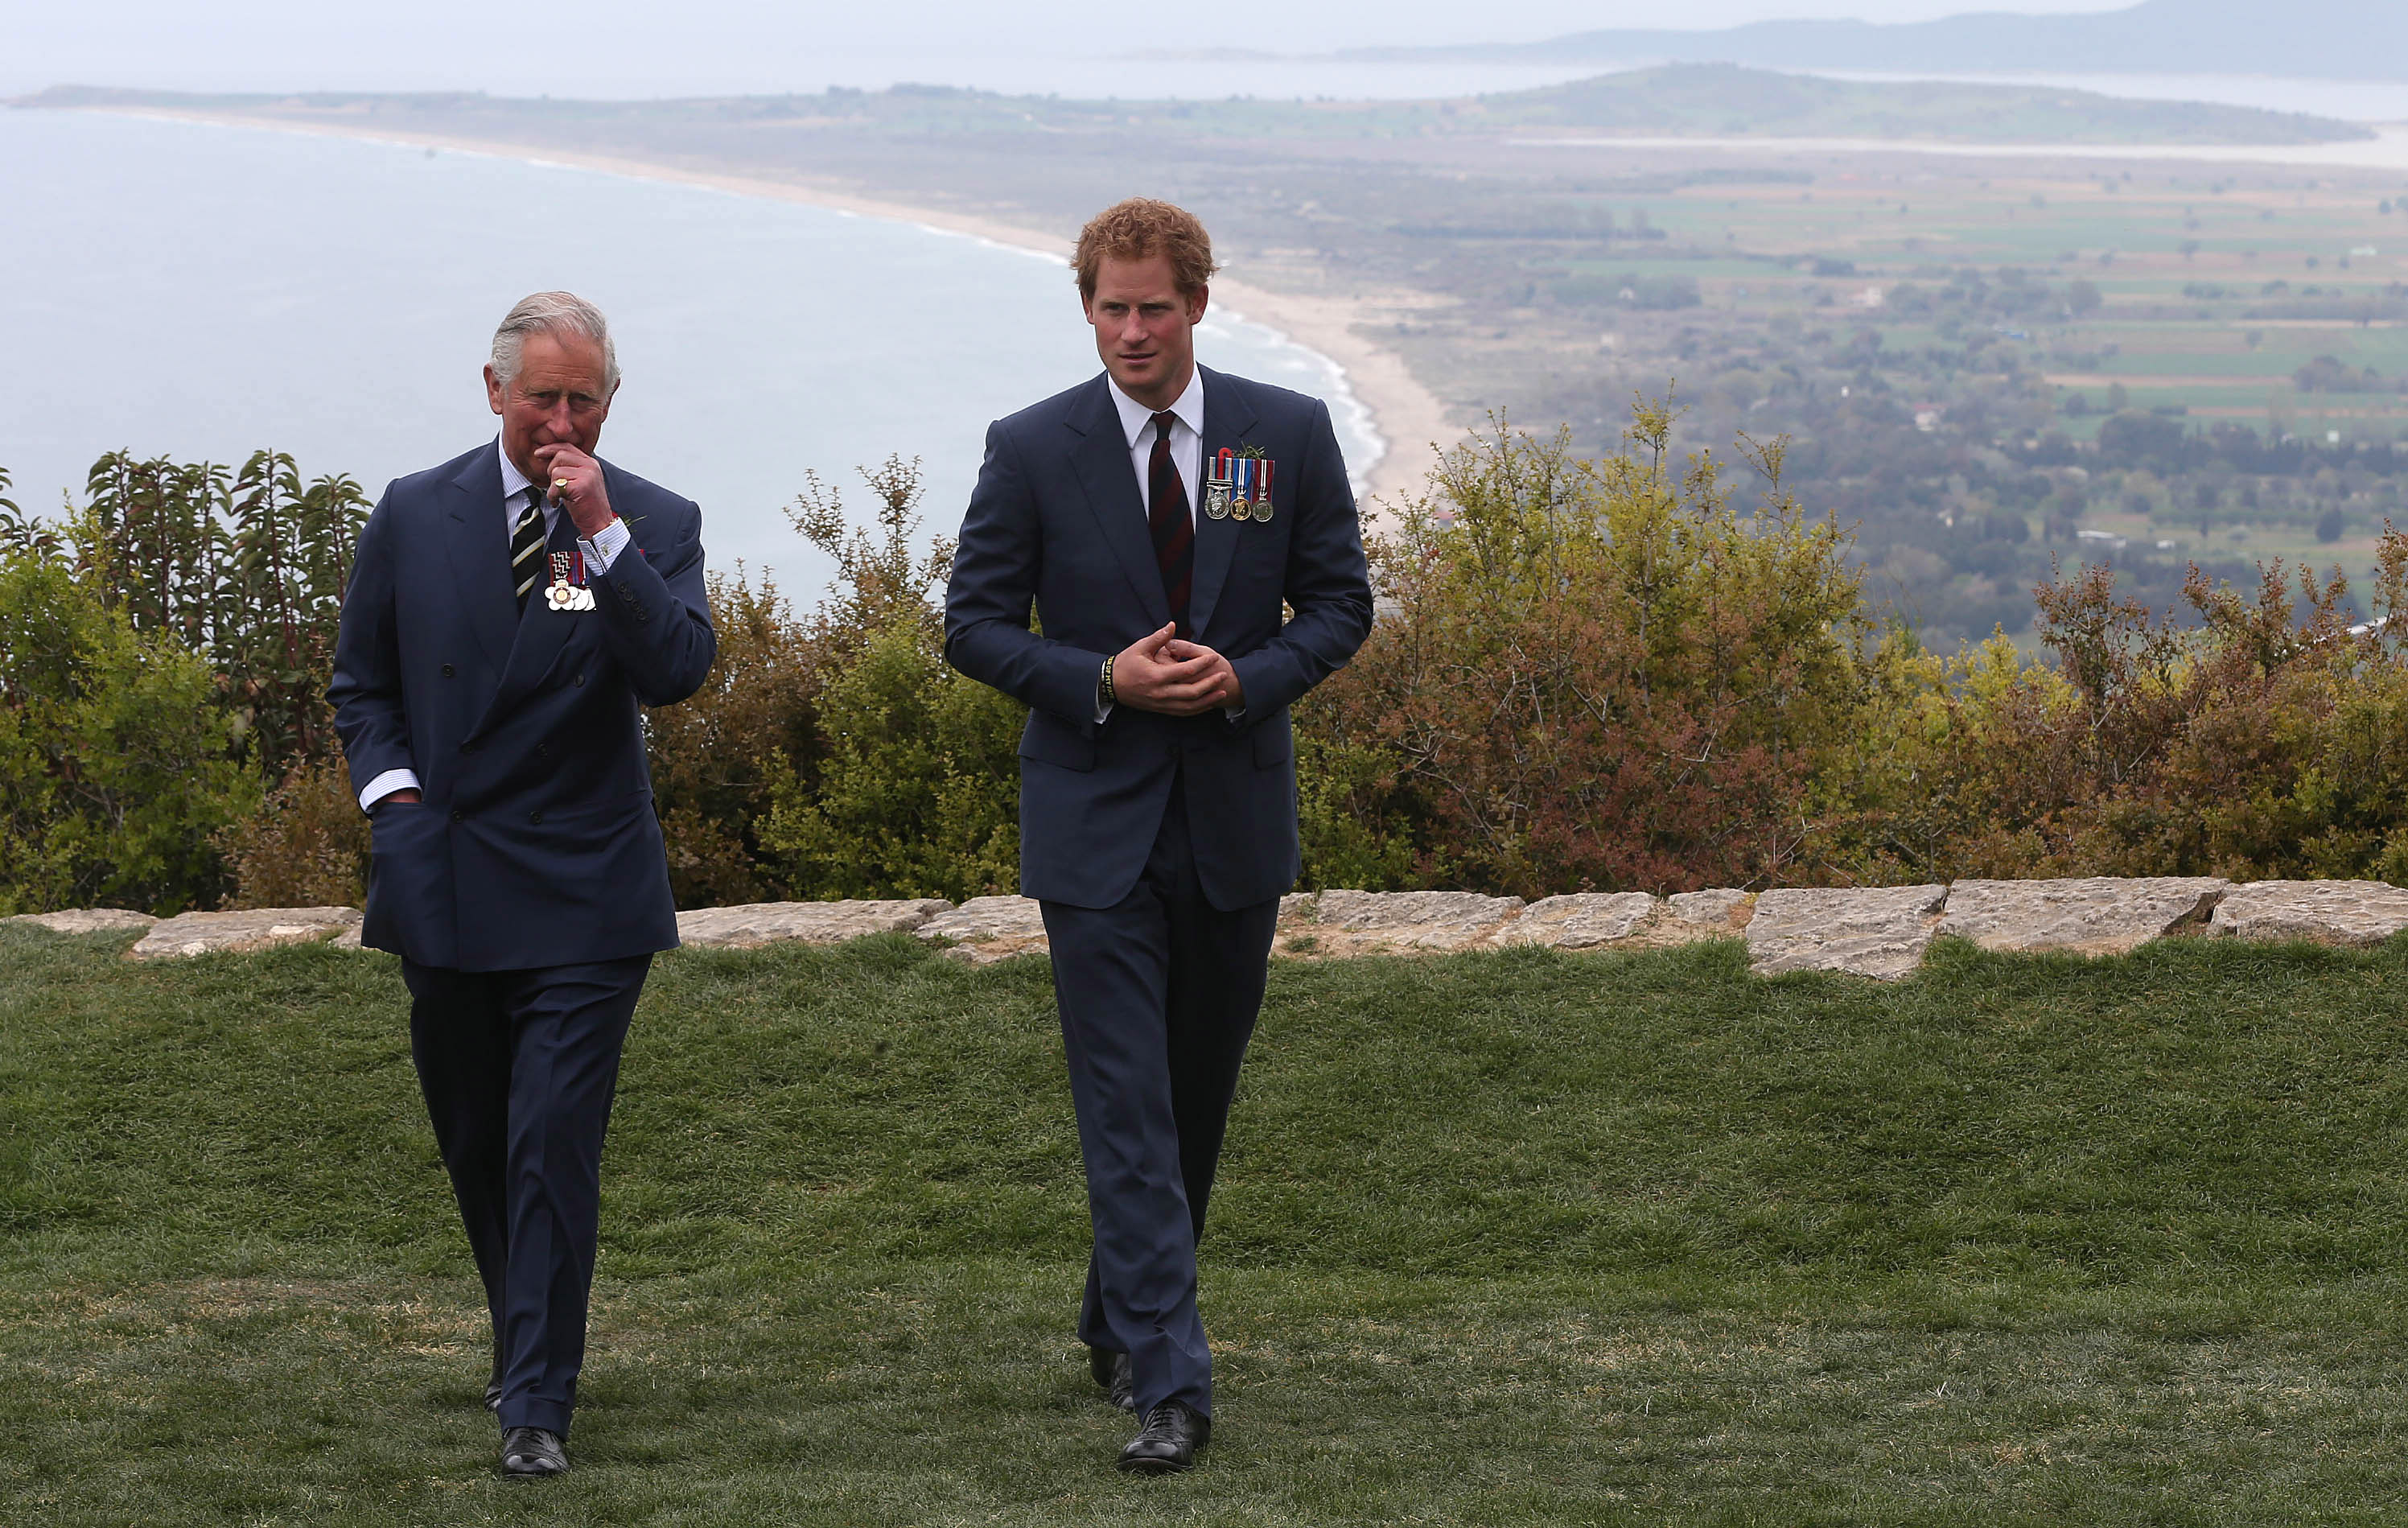 Le roi Charles III et le prince Harry discutent lors de l'événement du 100e anniversaire de la bataille de Gallipoli à Gallipoli, en Turquie, le 25 avril 2015 | Source : Getty Images